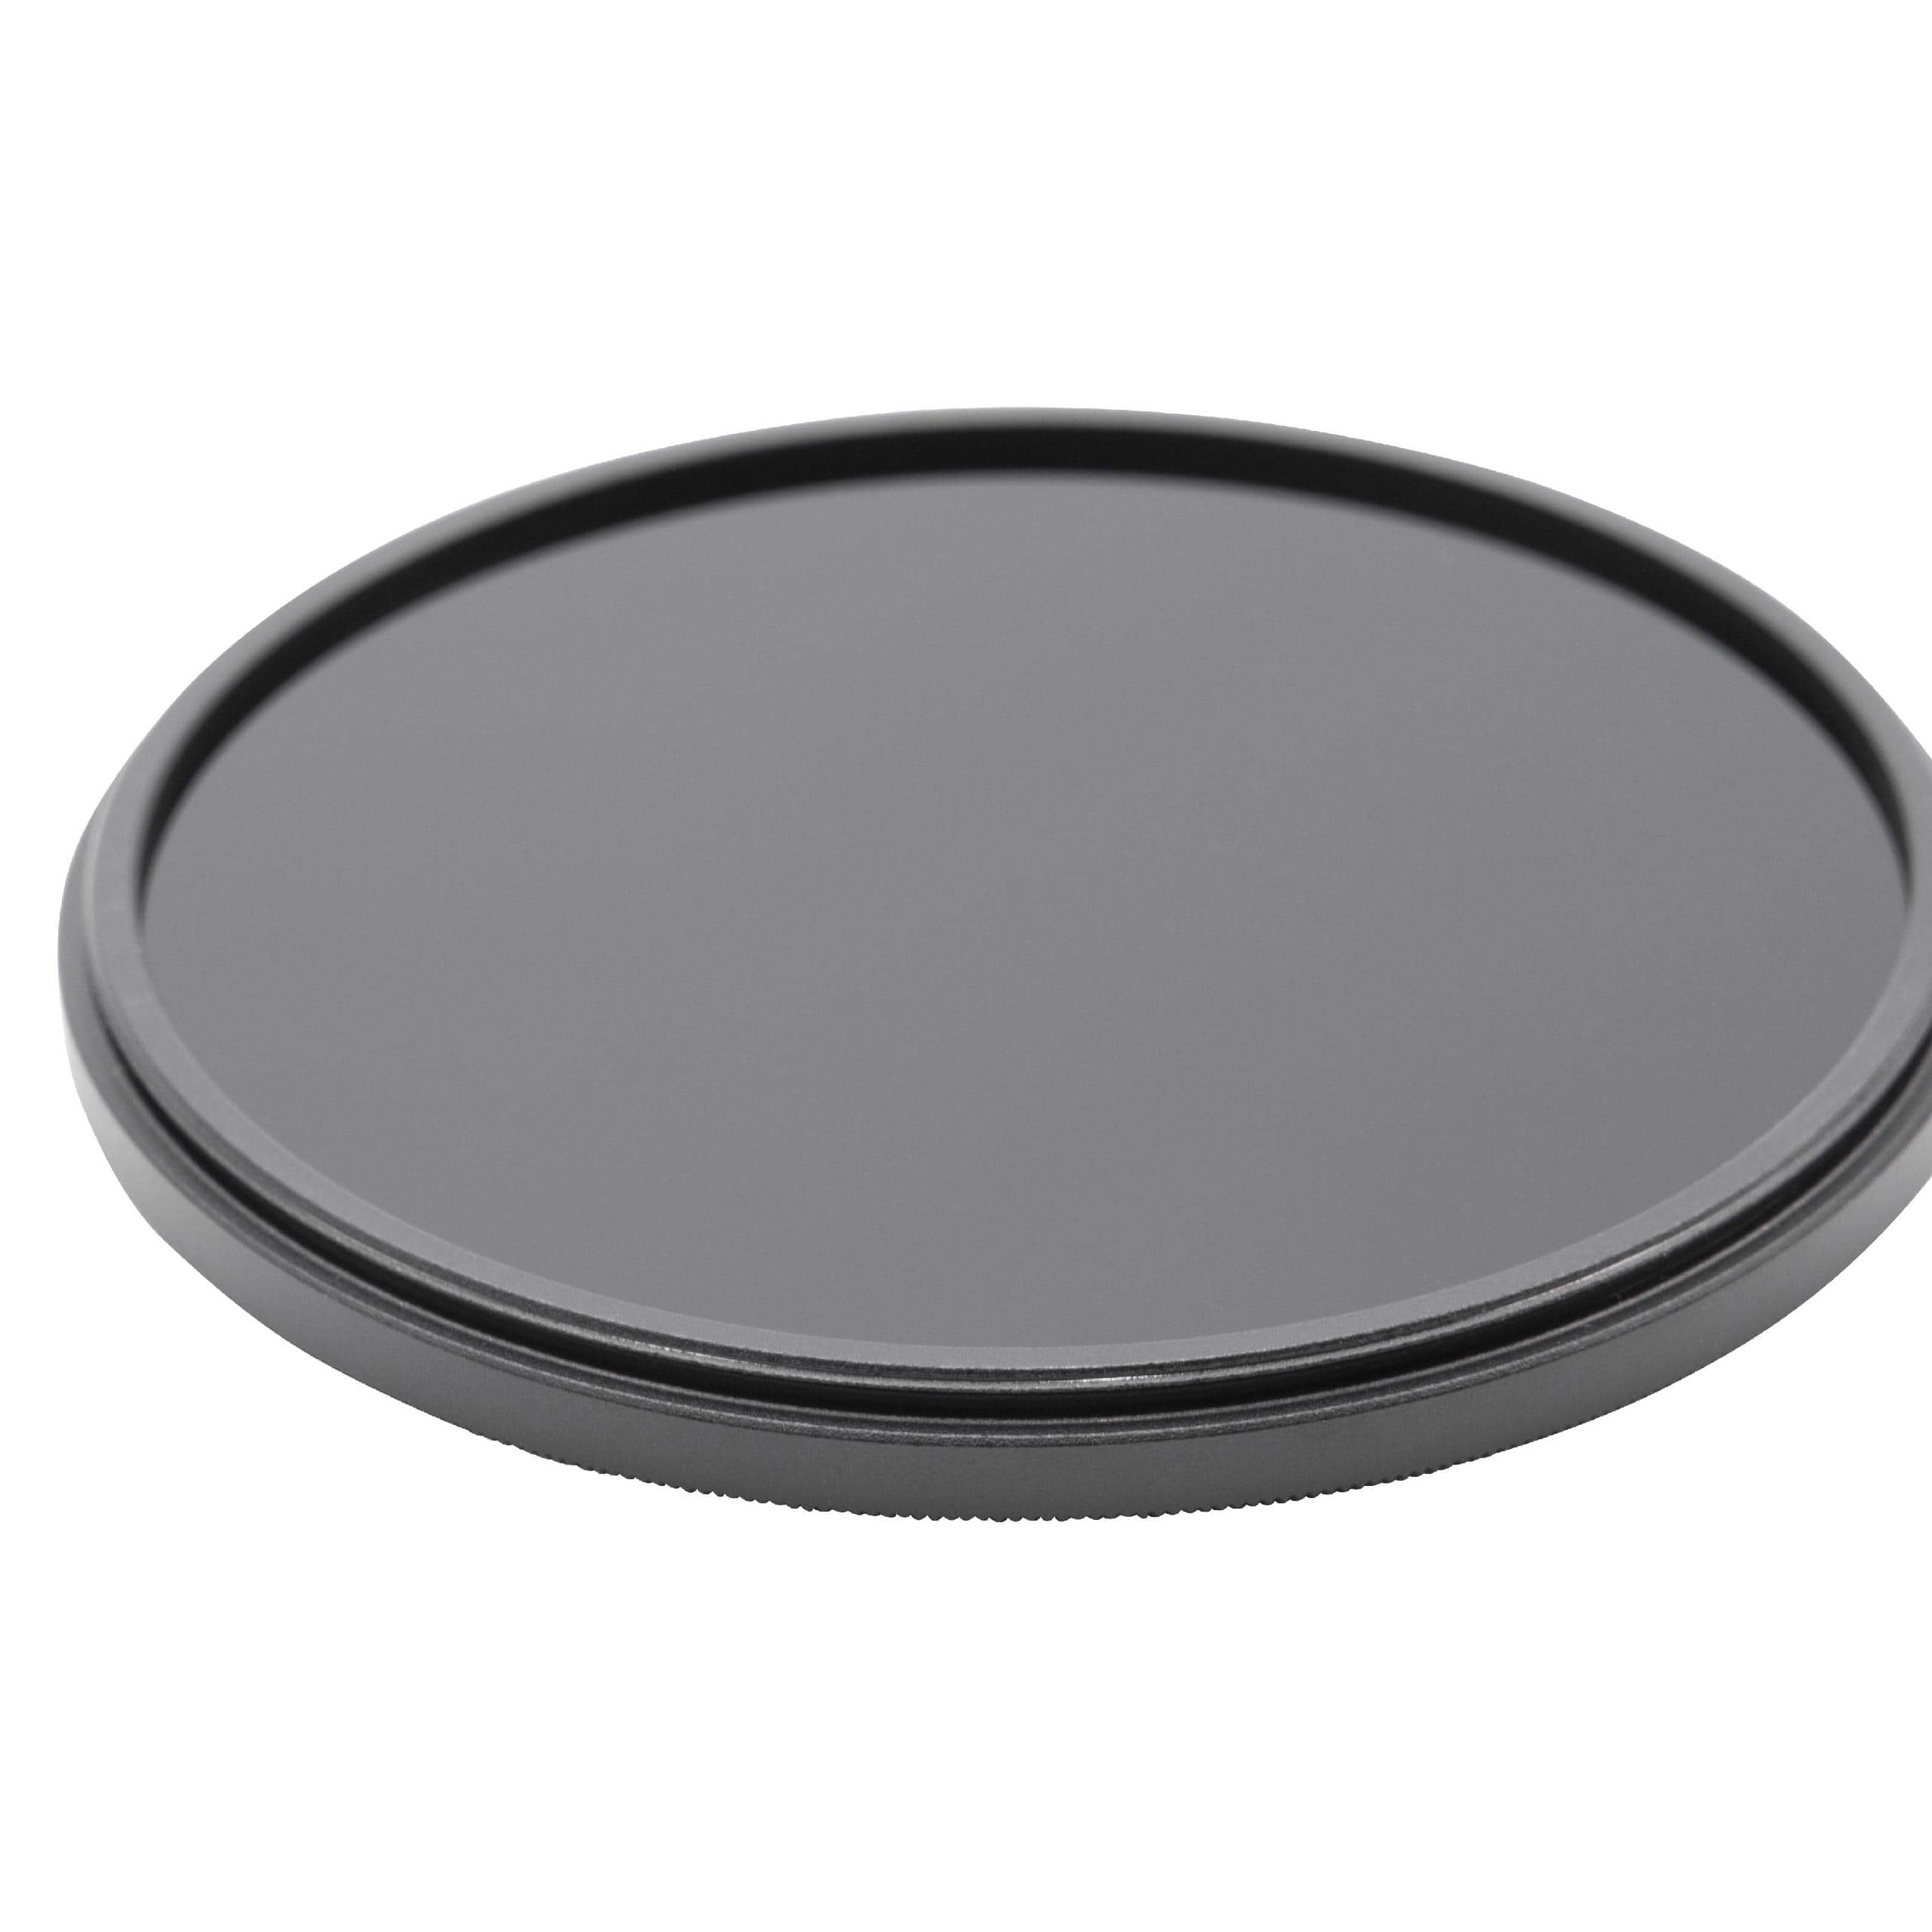 Filtro a densità neutra universale ND 1000 compatibile con obiettivi con filettatura 77 mm - Filtro grigio